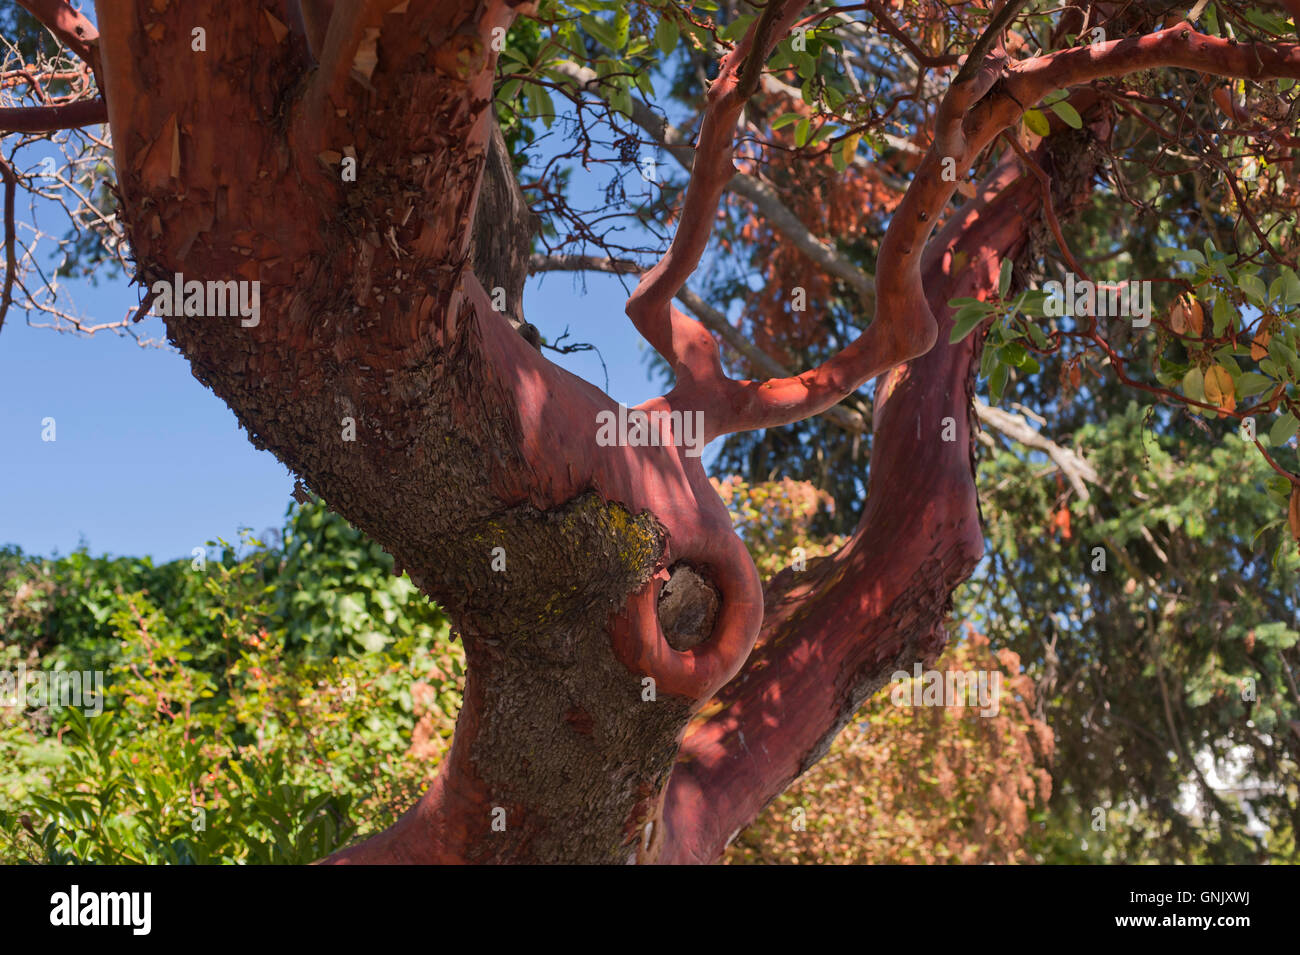 Arbutus Baum, Detail Der abblätternde Rinde Stamm, Victoria, British Columbia, Kanada. Stockfoto